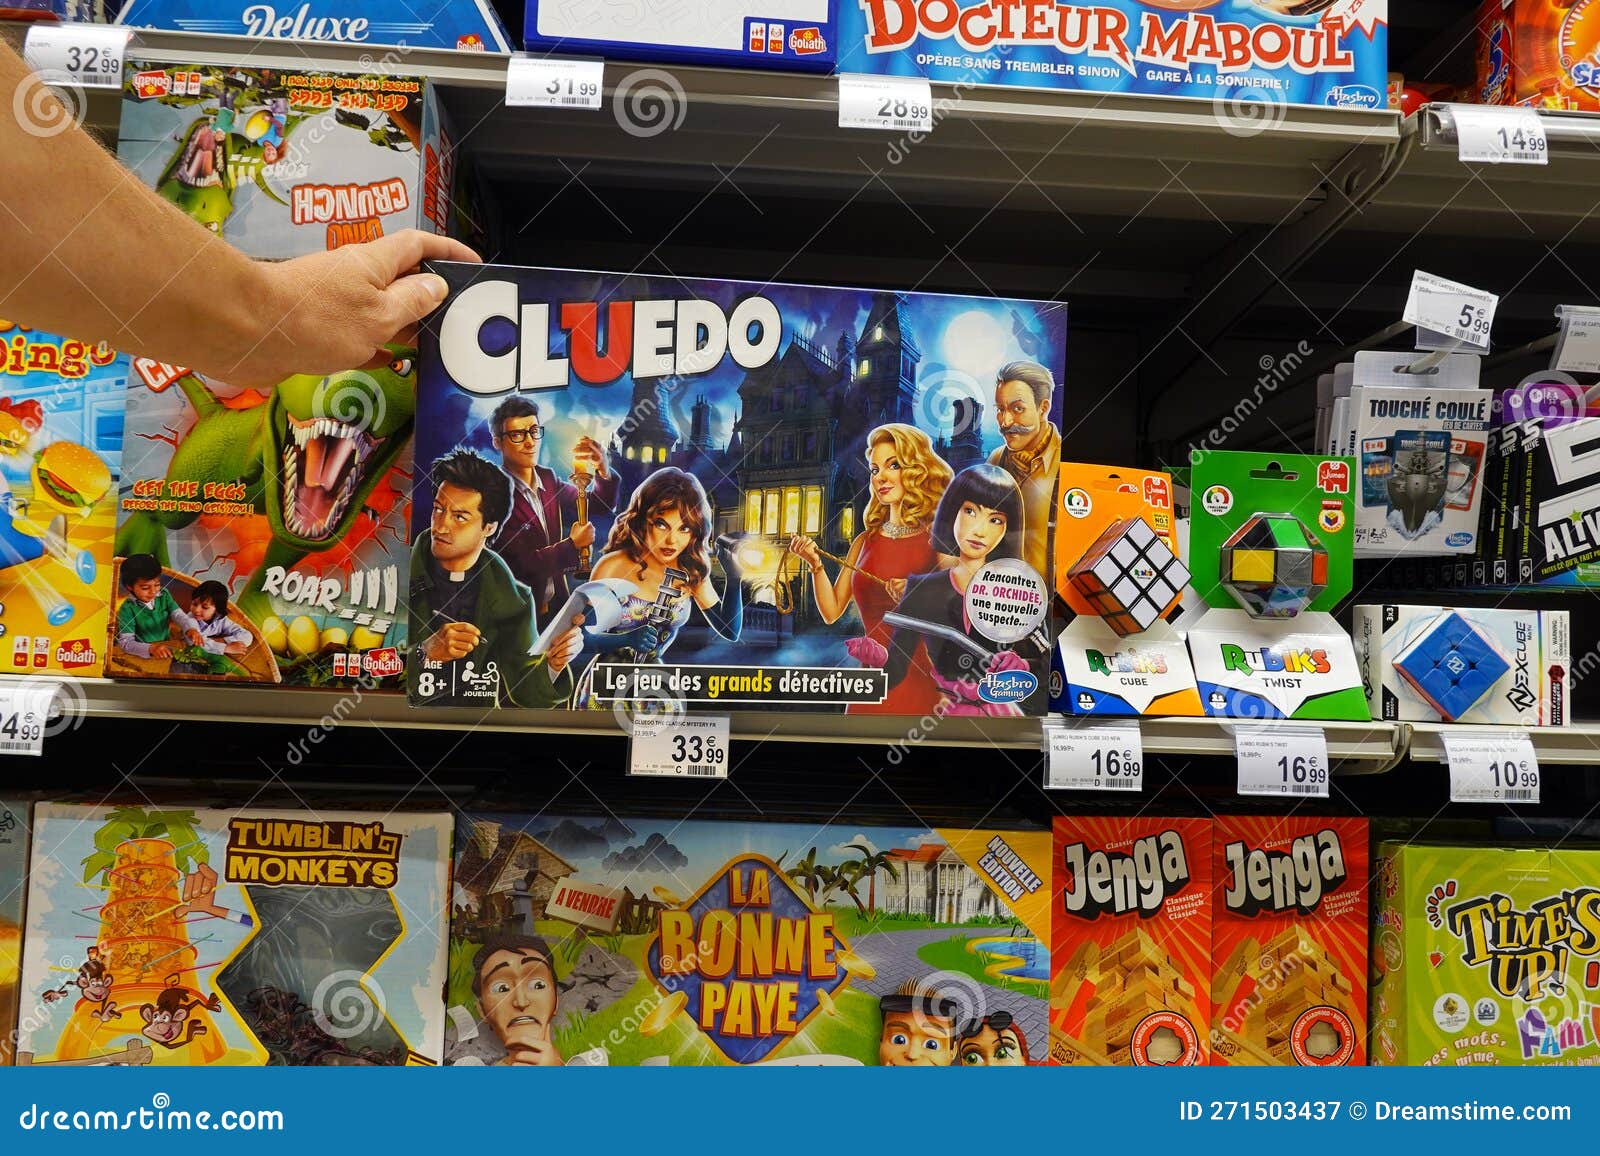 Mundo Gamer: Mundo dos Games no Carrefour